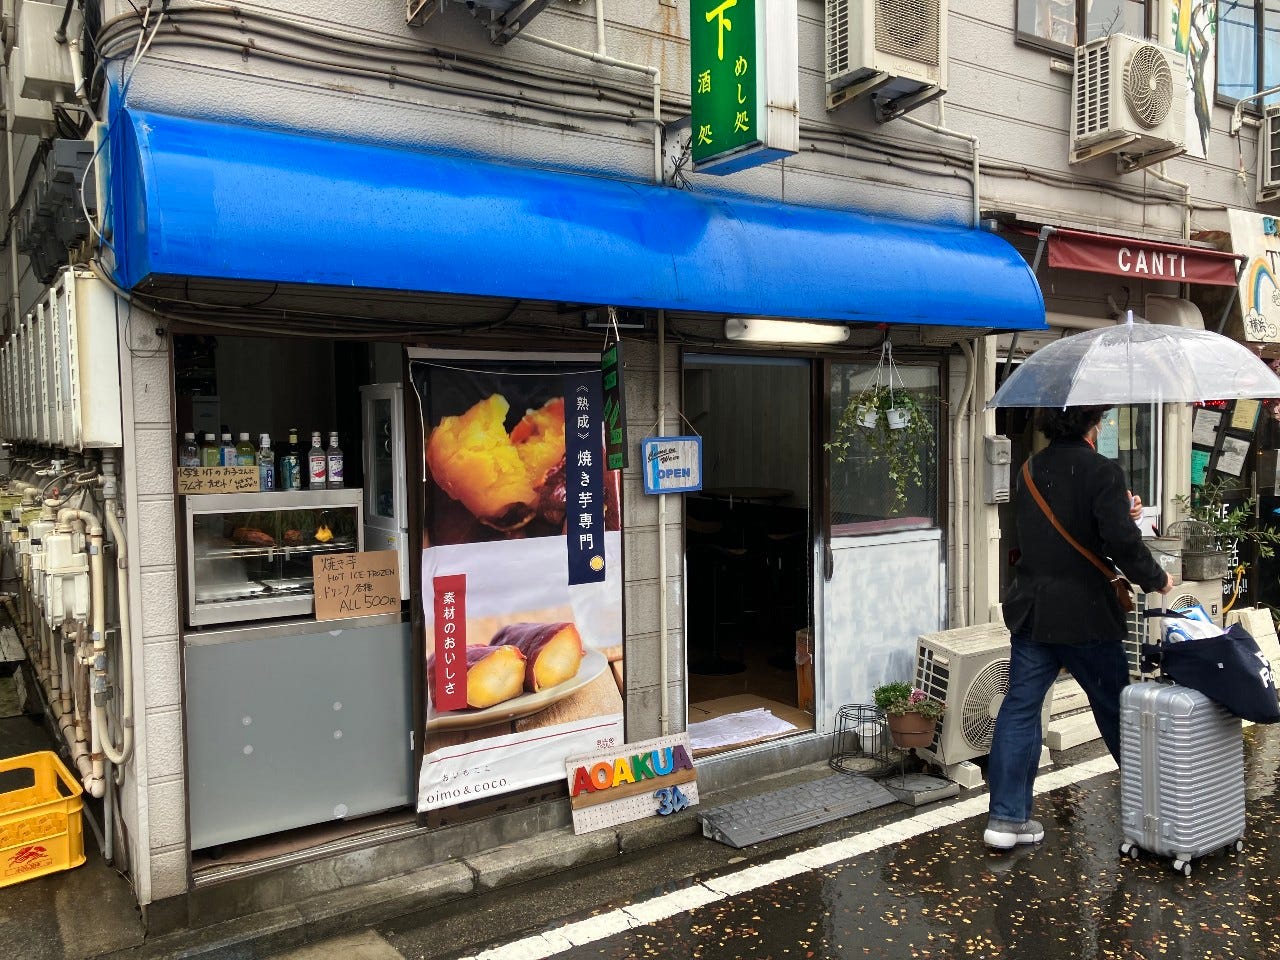 焼き芋cafe &BAR with Dog 《AOAKUA》 image